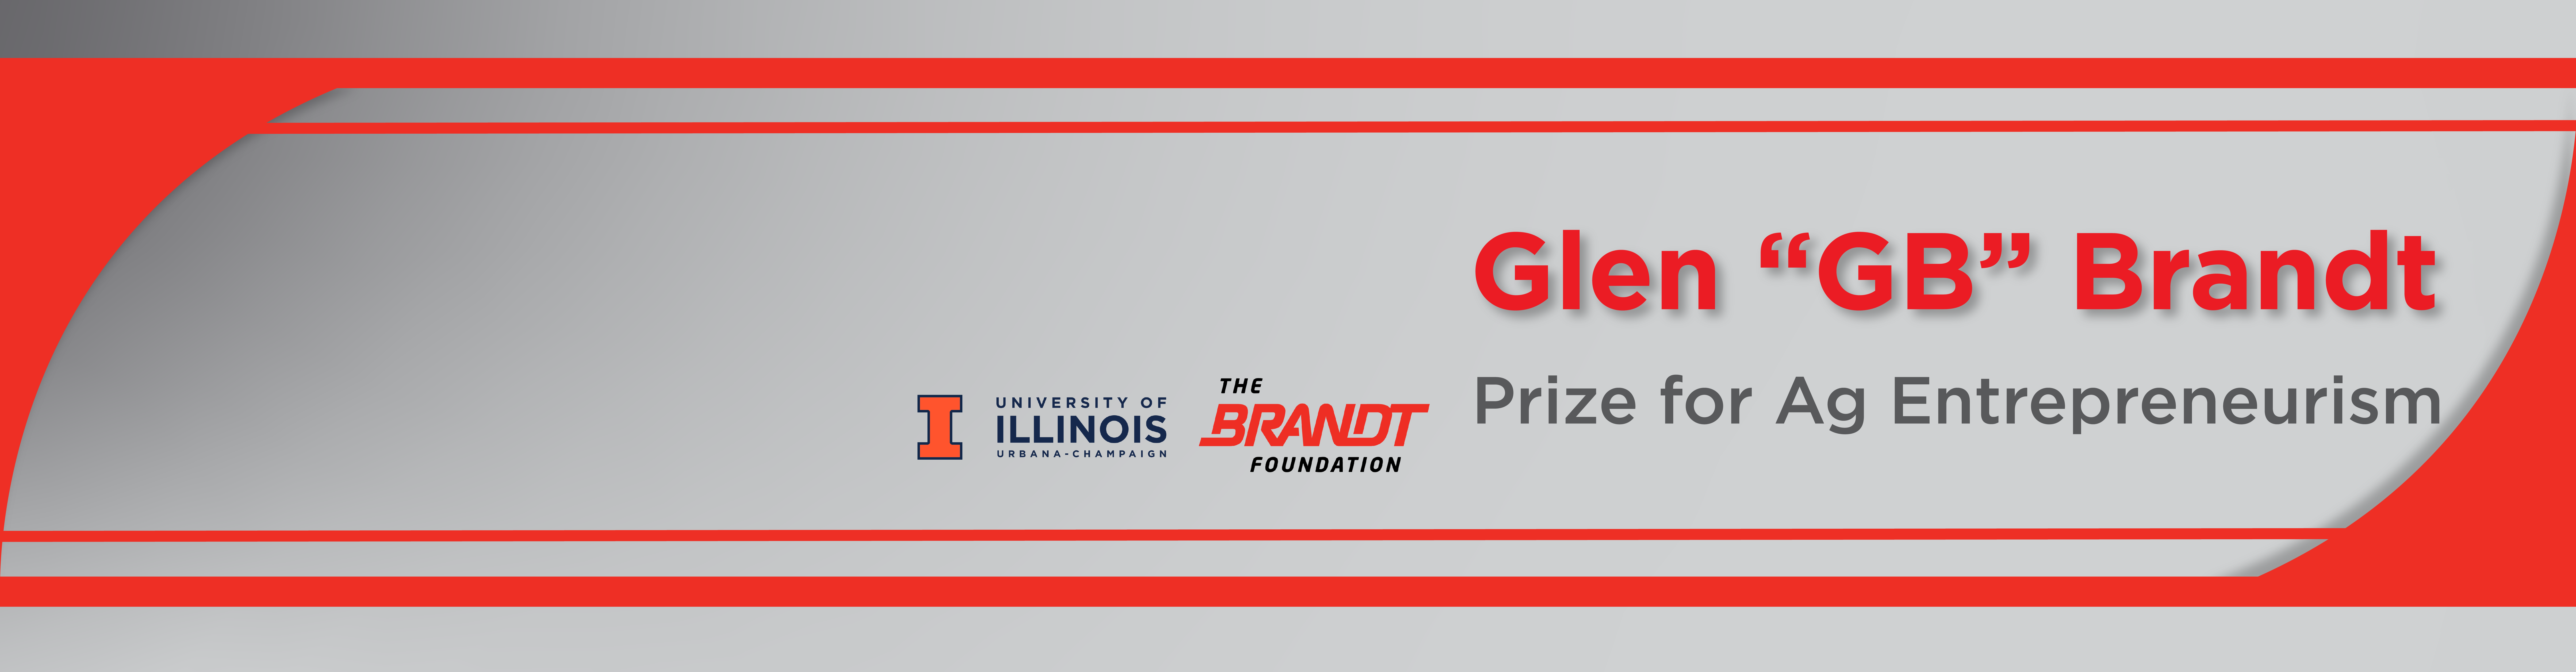 Glen “GB” Brandt Prize for Ag Entrepreneurism